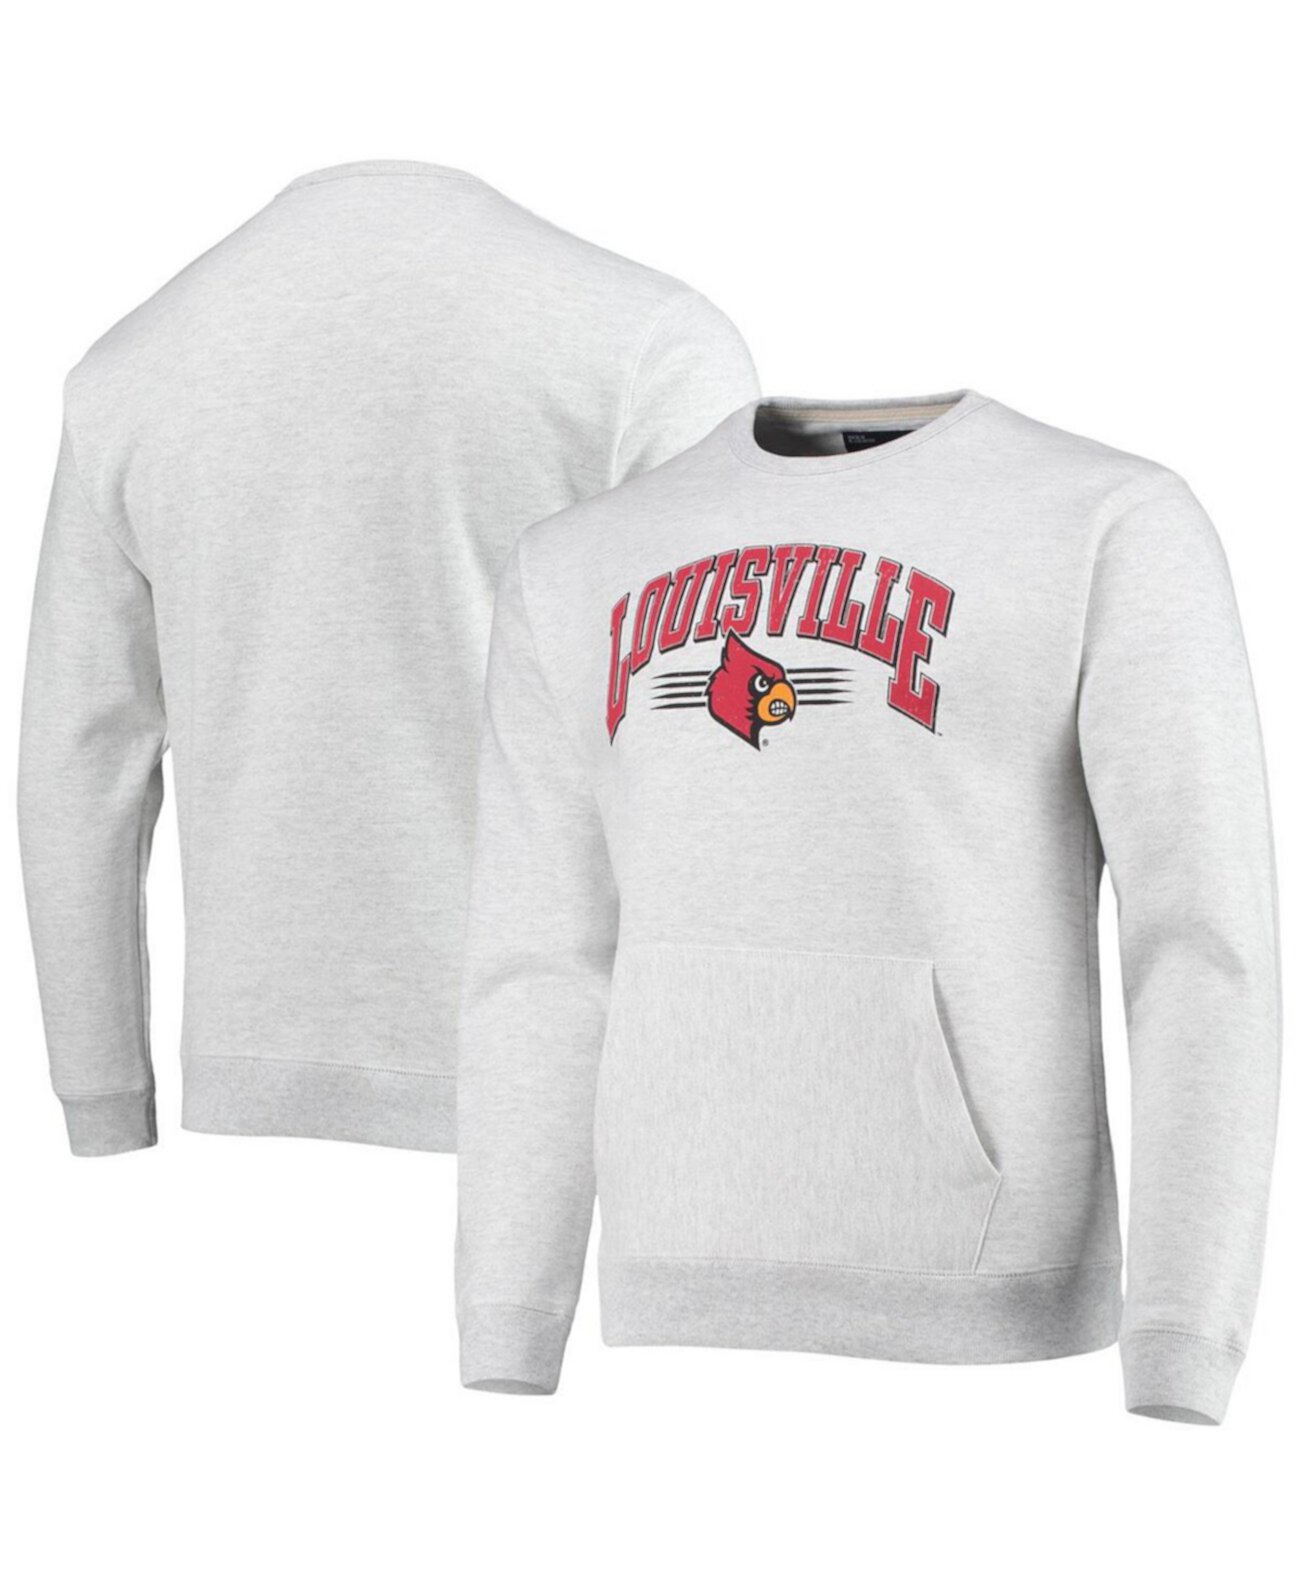 Мужская серая меланжевая толстовка Louisville Cardinals с карманом для старшеклассников League Collegiate Wear